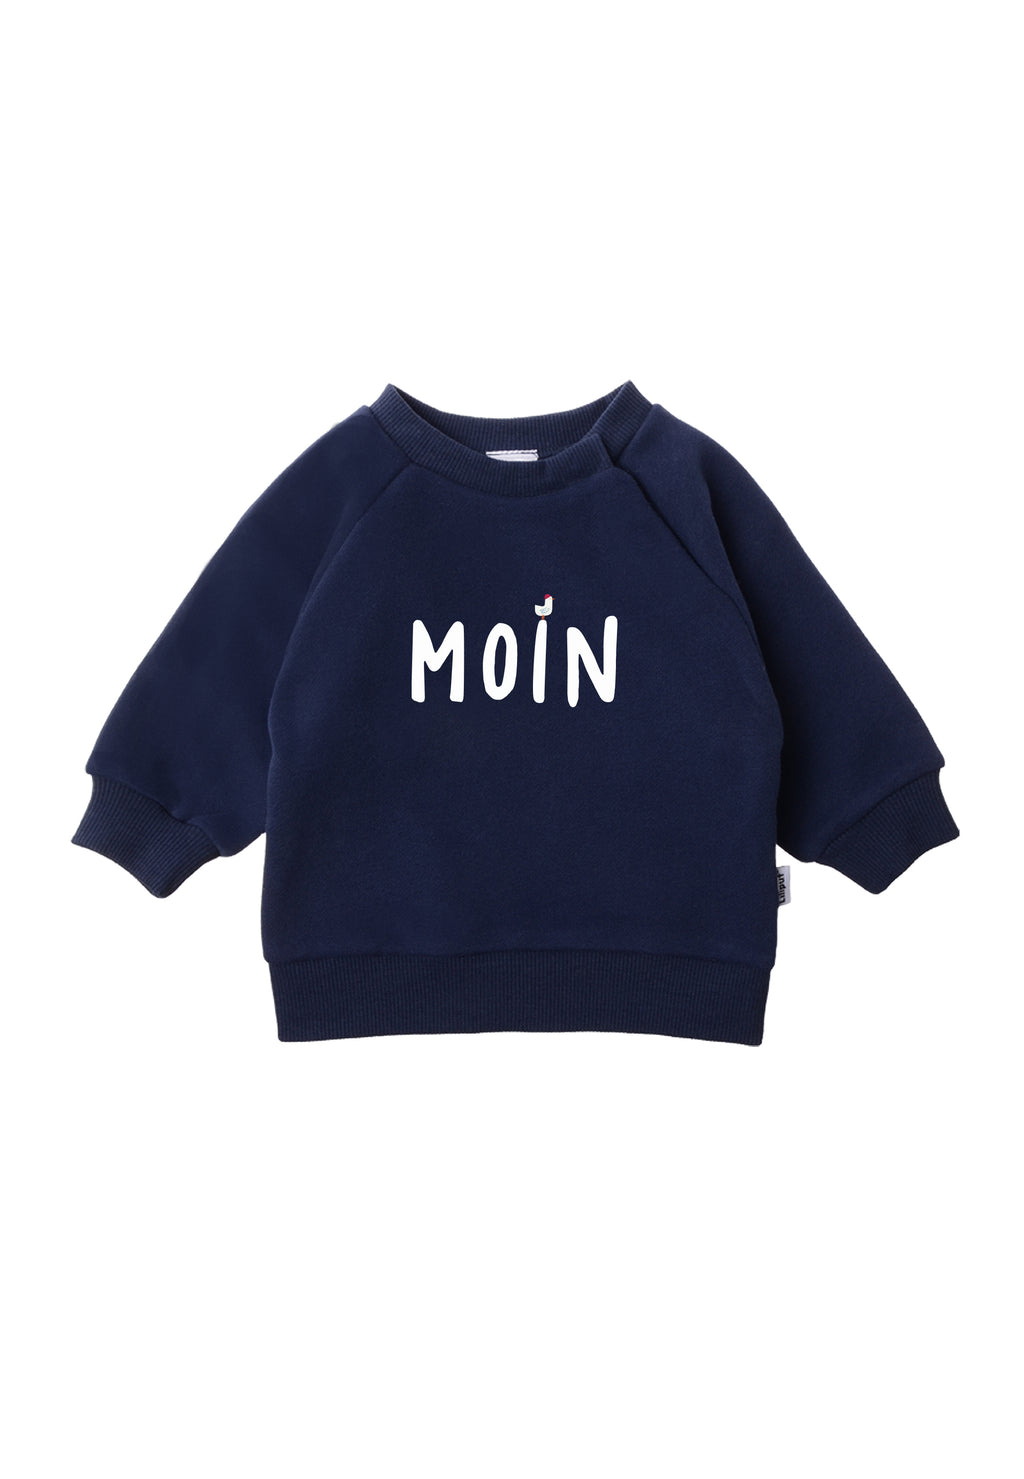 Sweatshirt in dunkelblau mit Wording Moin und einer kleinen Möwe, die auf dem Buchstaben I sitzt.